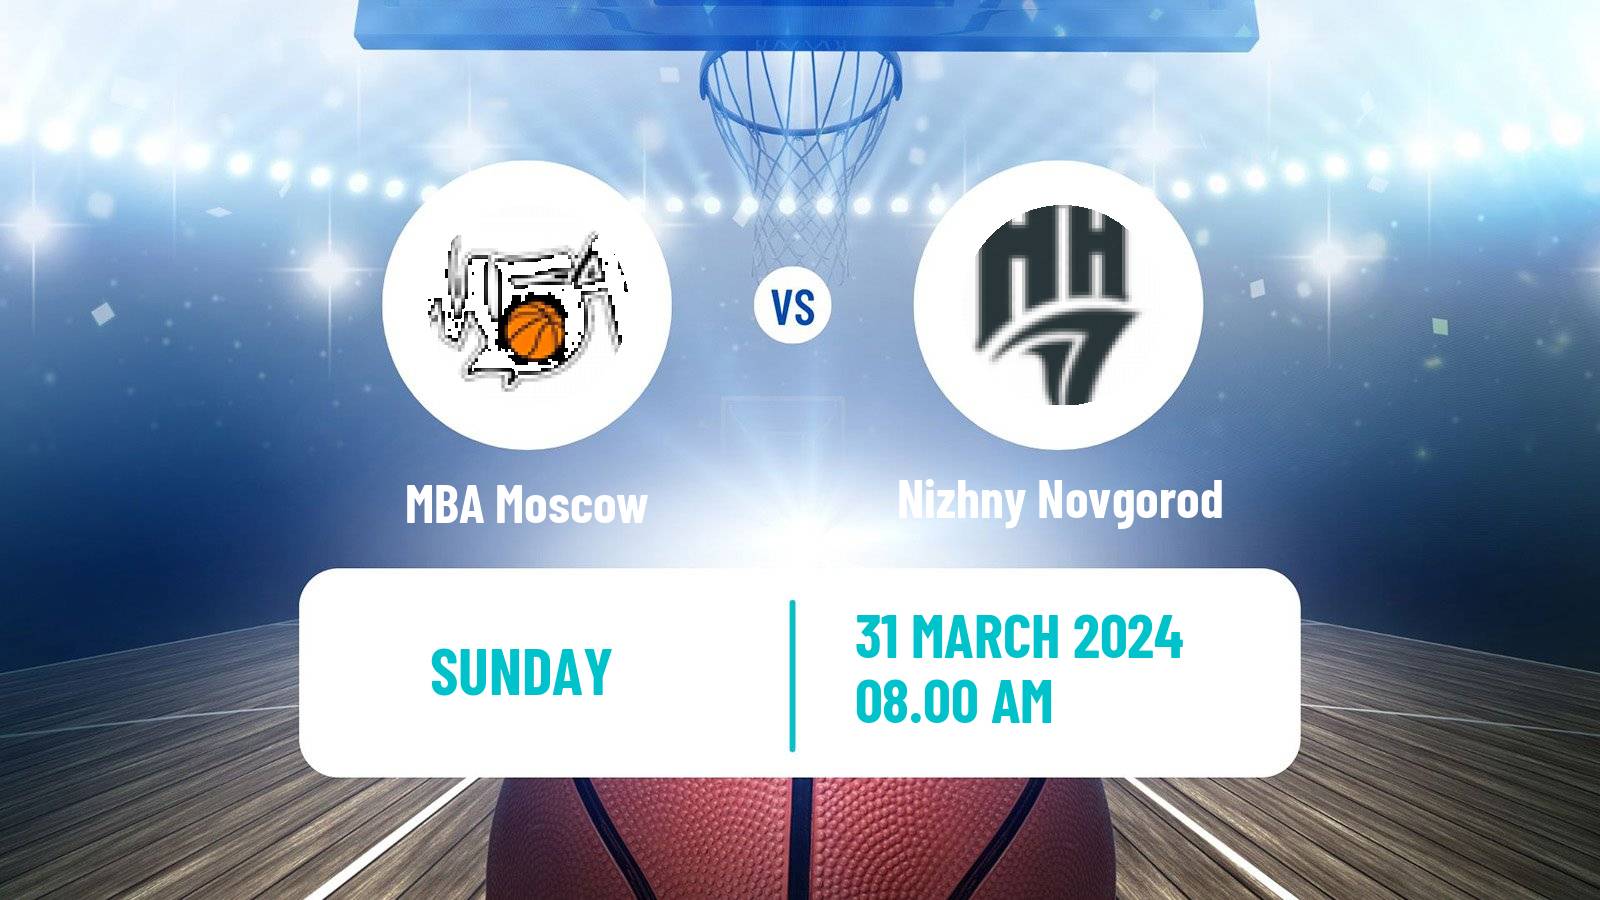 Basketball VTB United League MBA Moscow - Nizhny Novgorod